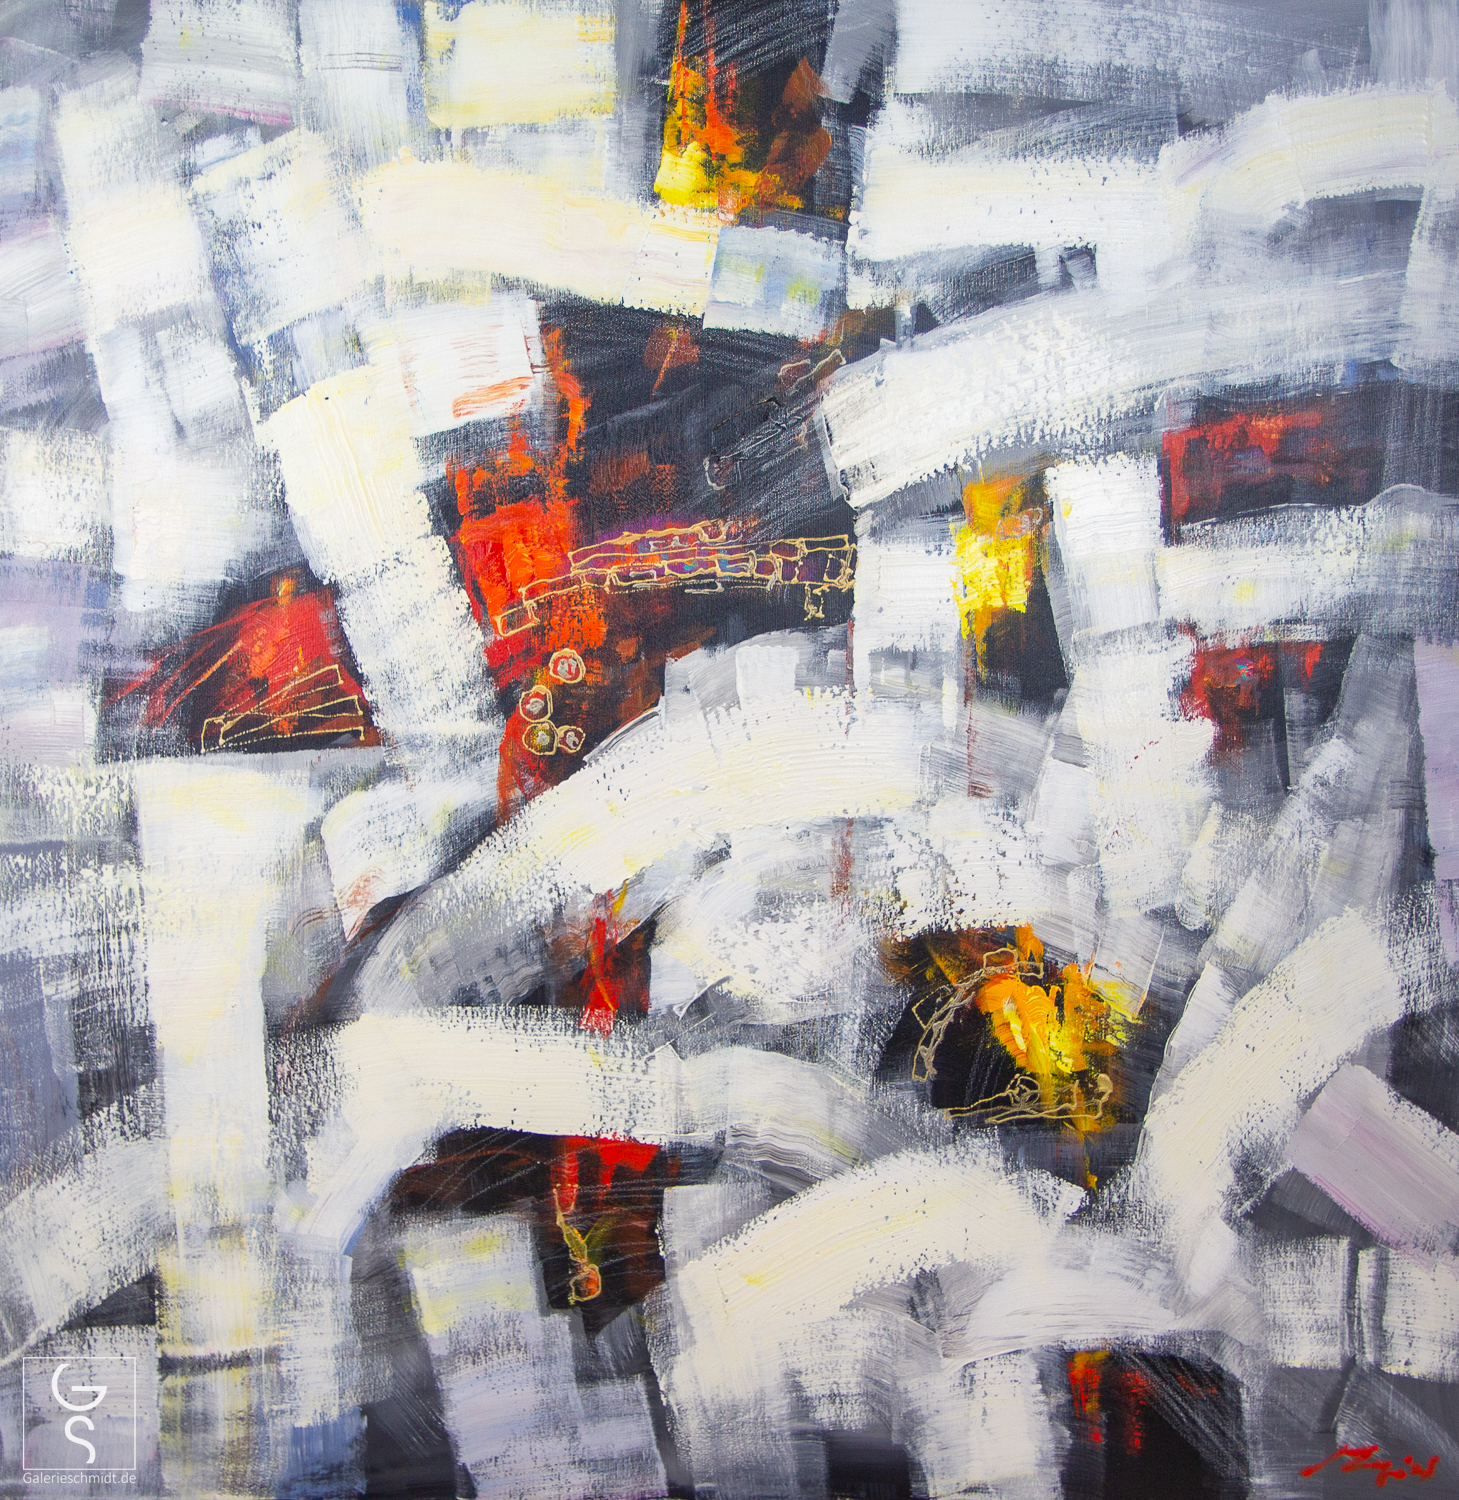 Chaos in Stille von Madjid, abstraktes modernes Kunstwerk von Maler Madjid in Schwarz und Weiß mit Farbakzenten in Rot und Gelb.